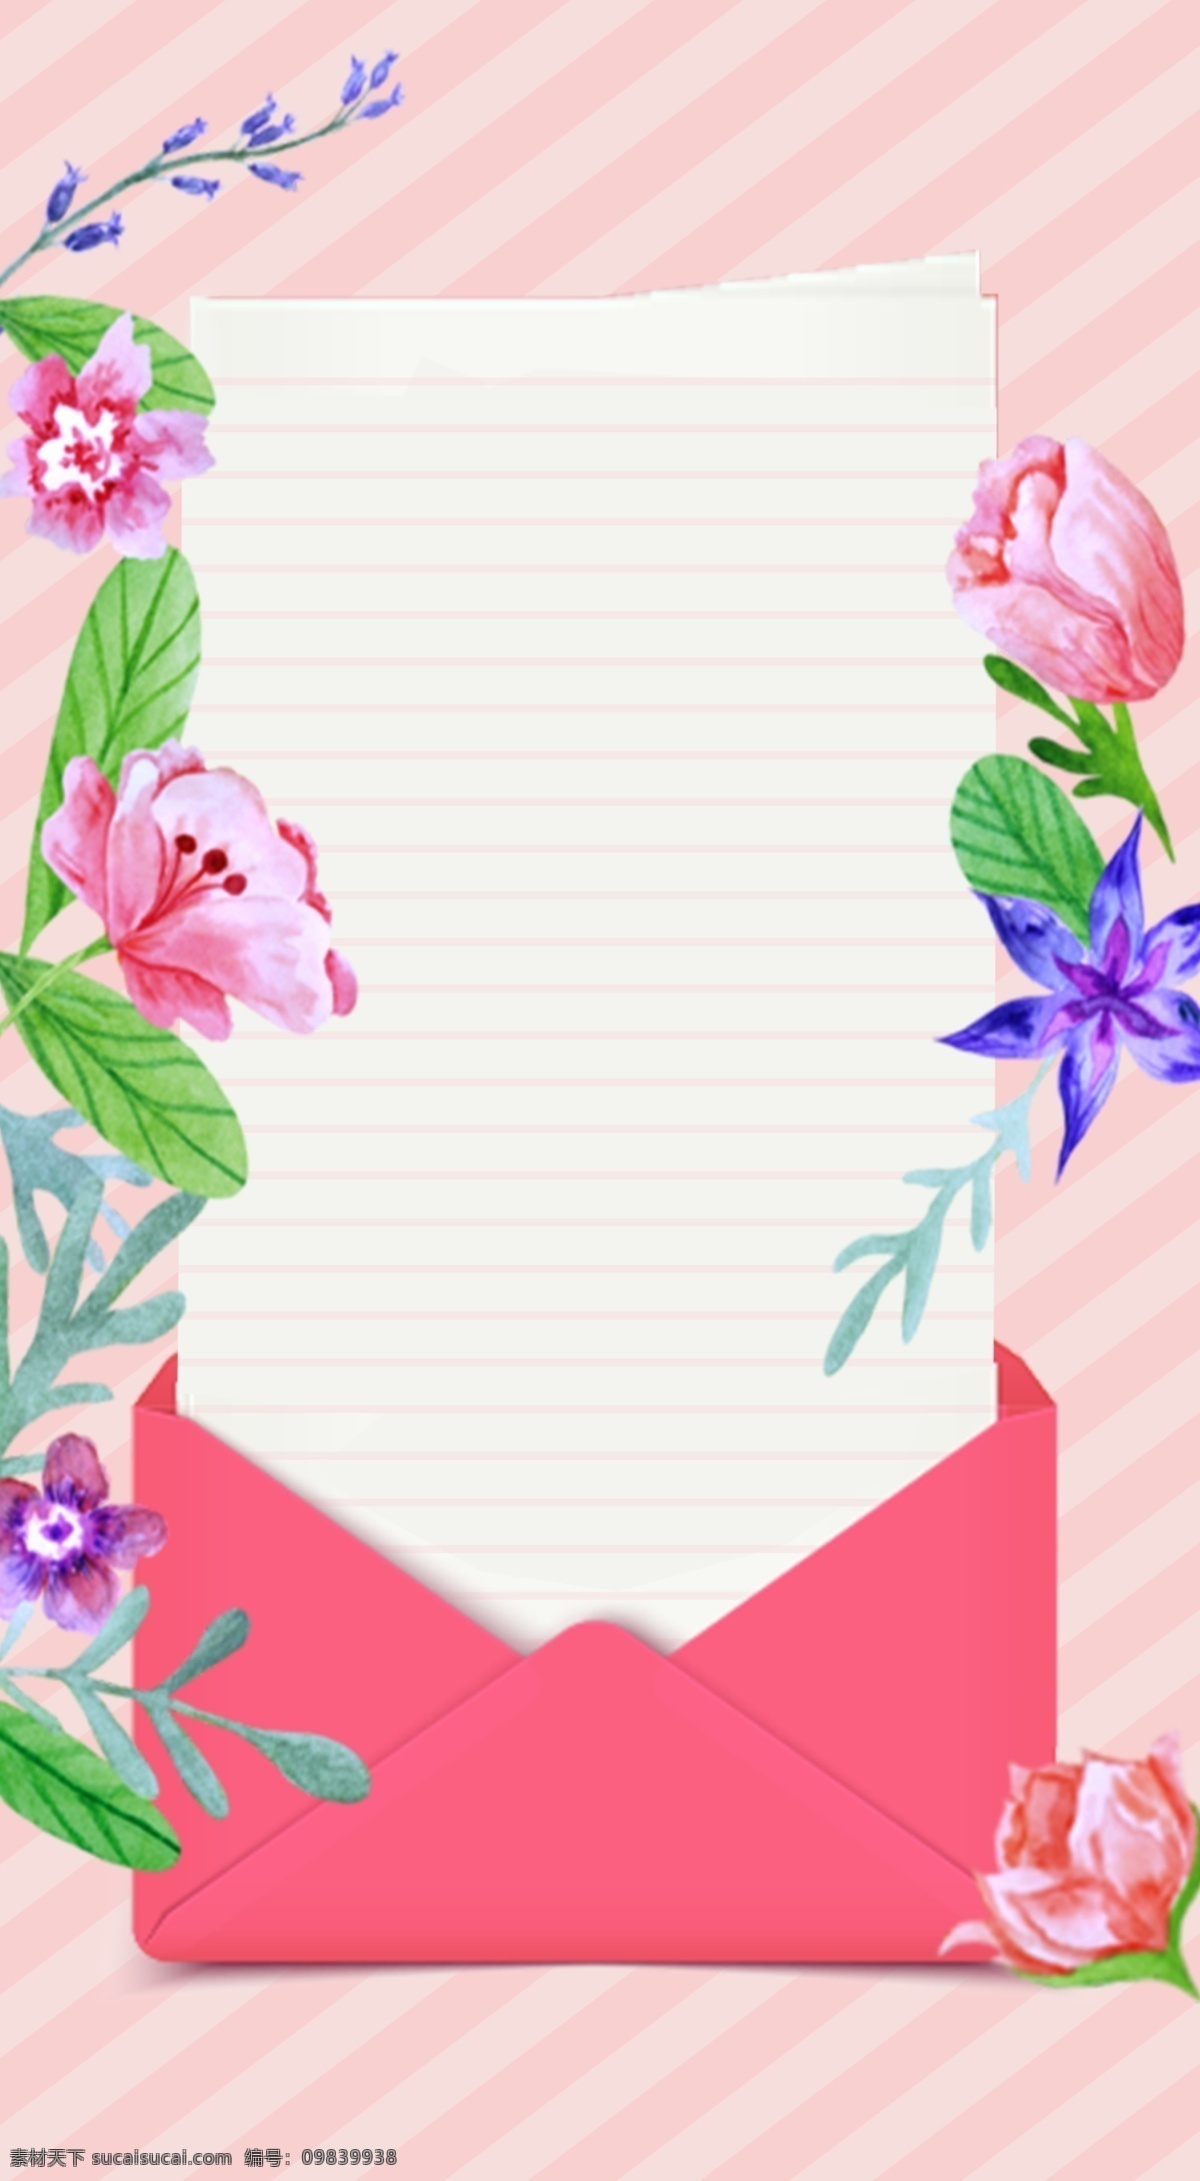 清晰 唯美 粉色 系 花卉 背景 小清新背景 植物背景 植物花卉 水彩背景 通用背景 粉色背景 广告背景